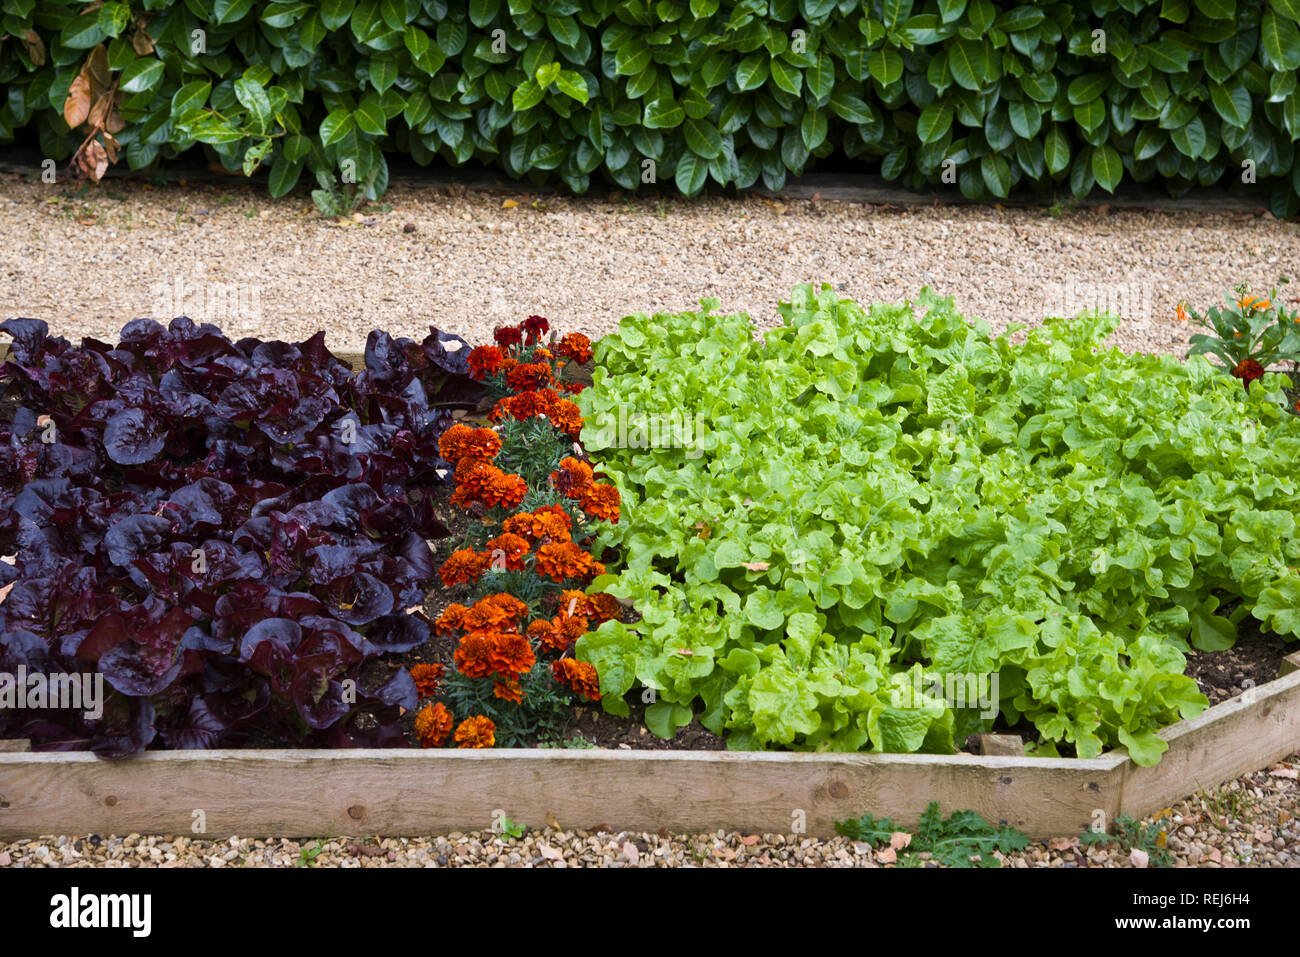 Ein Bett gemischter Salat mit marrigolds als Begleiter Anlage verwendet Stockfoto